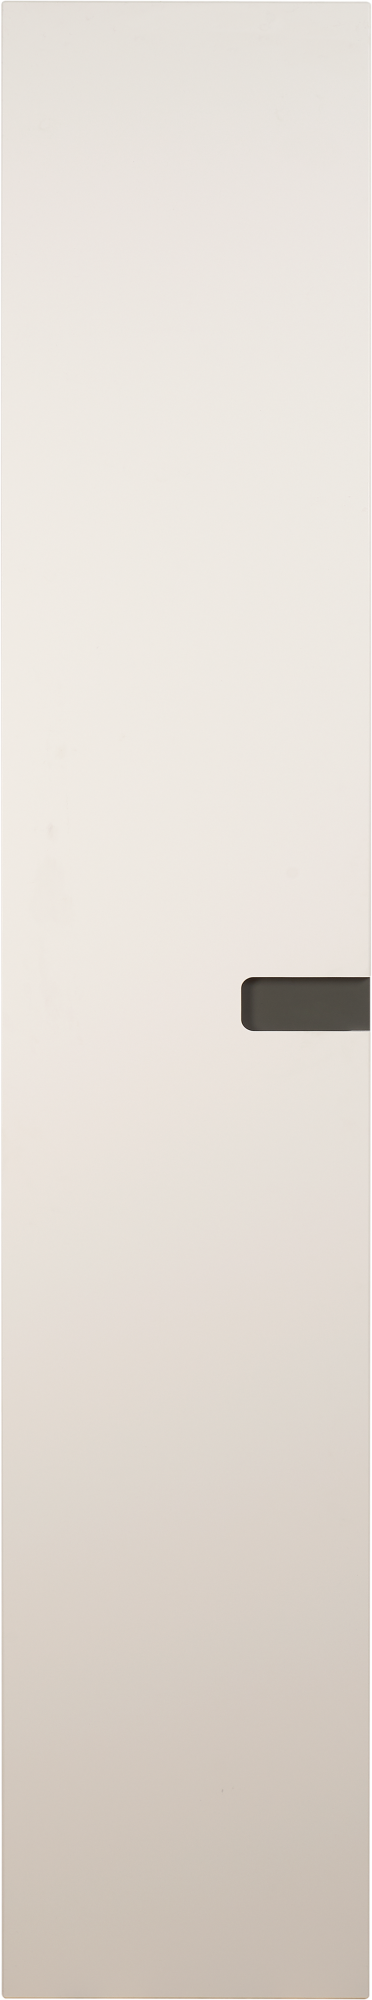 Puerta abatible de armario nepal blanco y gris 60x200x1,9cm